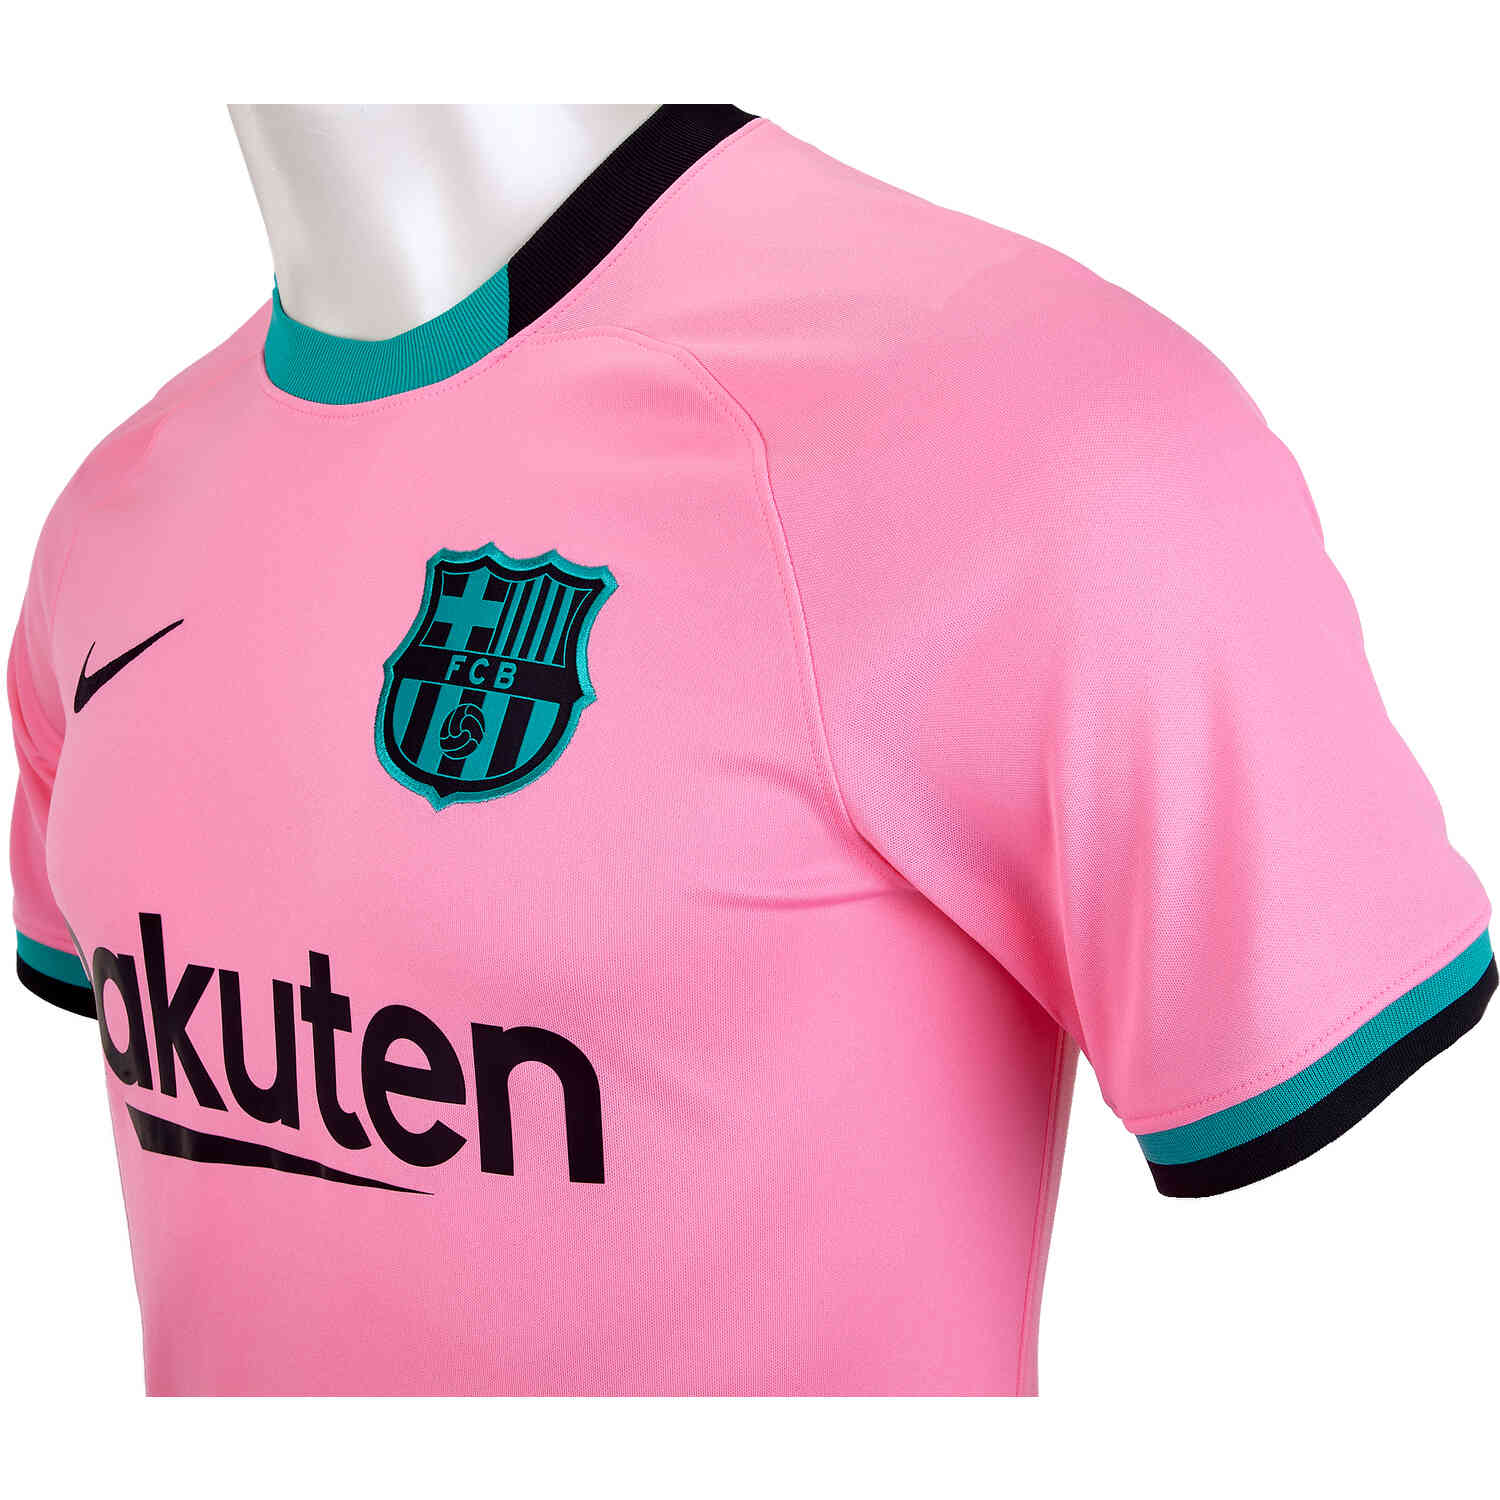 20/21 Barcelona Third Away Pink Soccer Jerseys Kit(Shirt+Short)